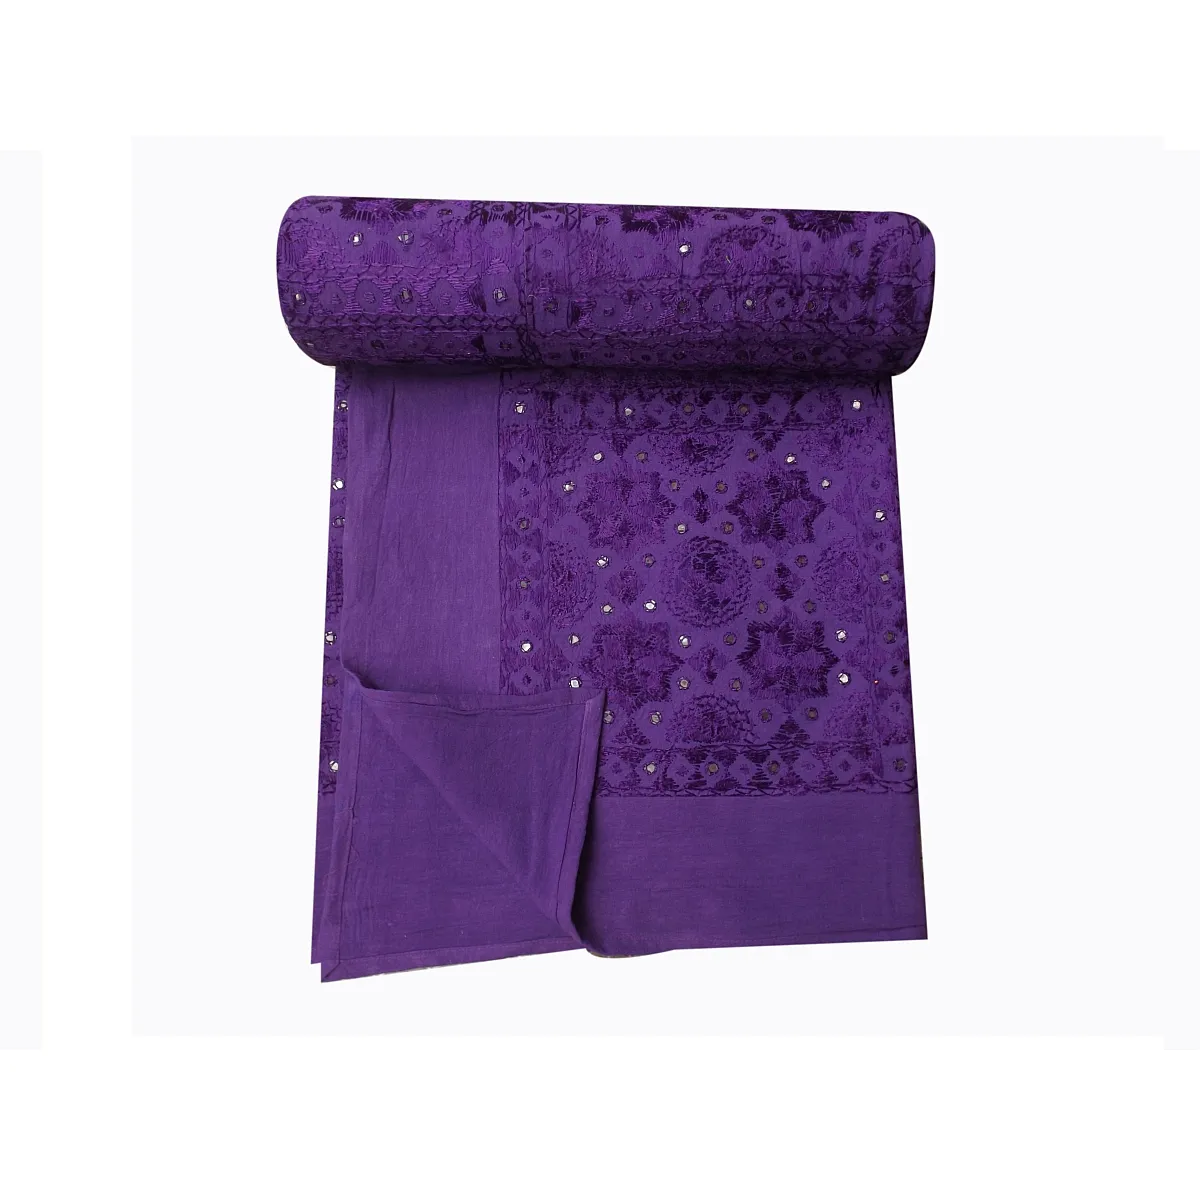 El bloğu baskı tasarım ayna çalışması mor renk yolu egzotik koleksiyonu tersinir sari kantha yorgan